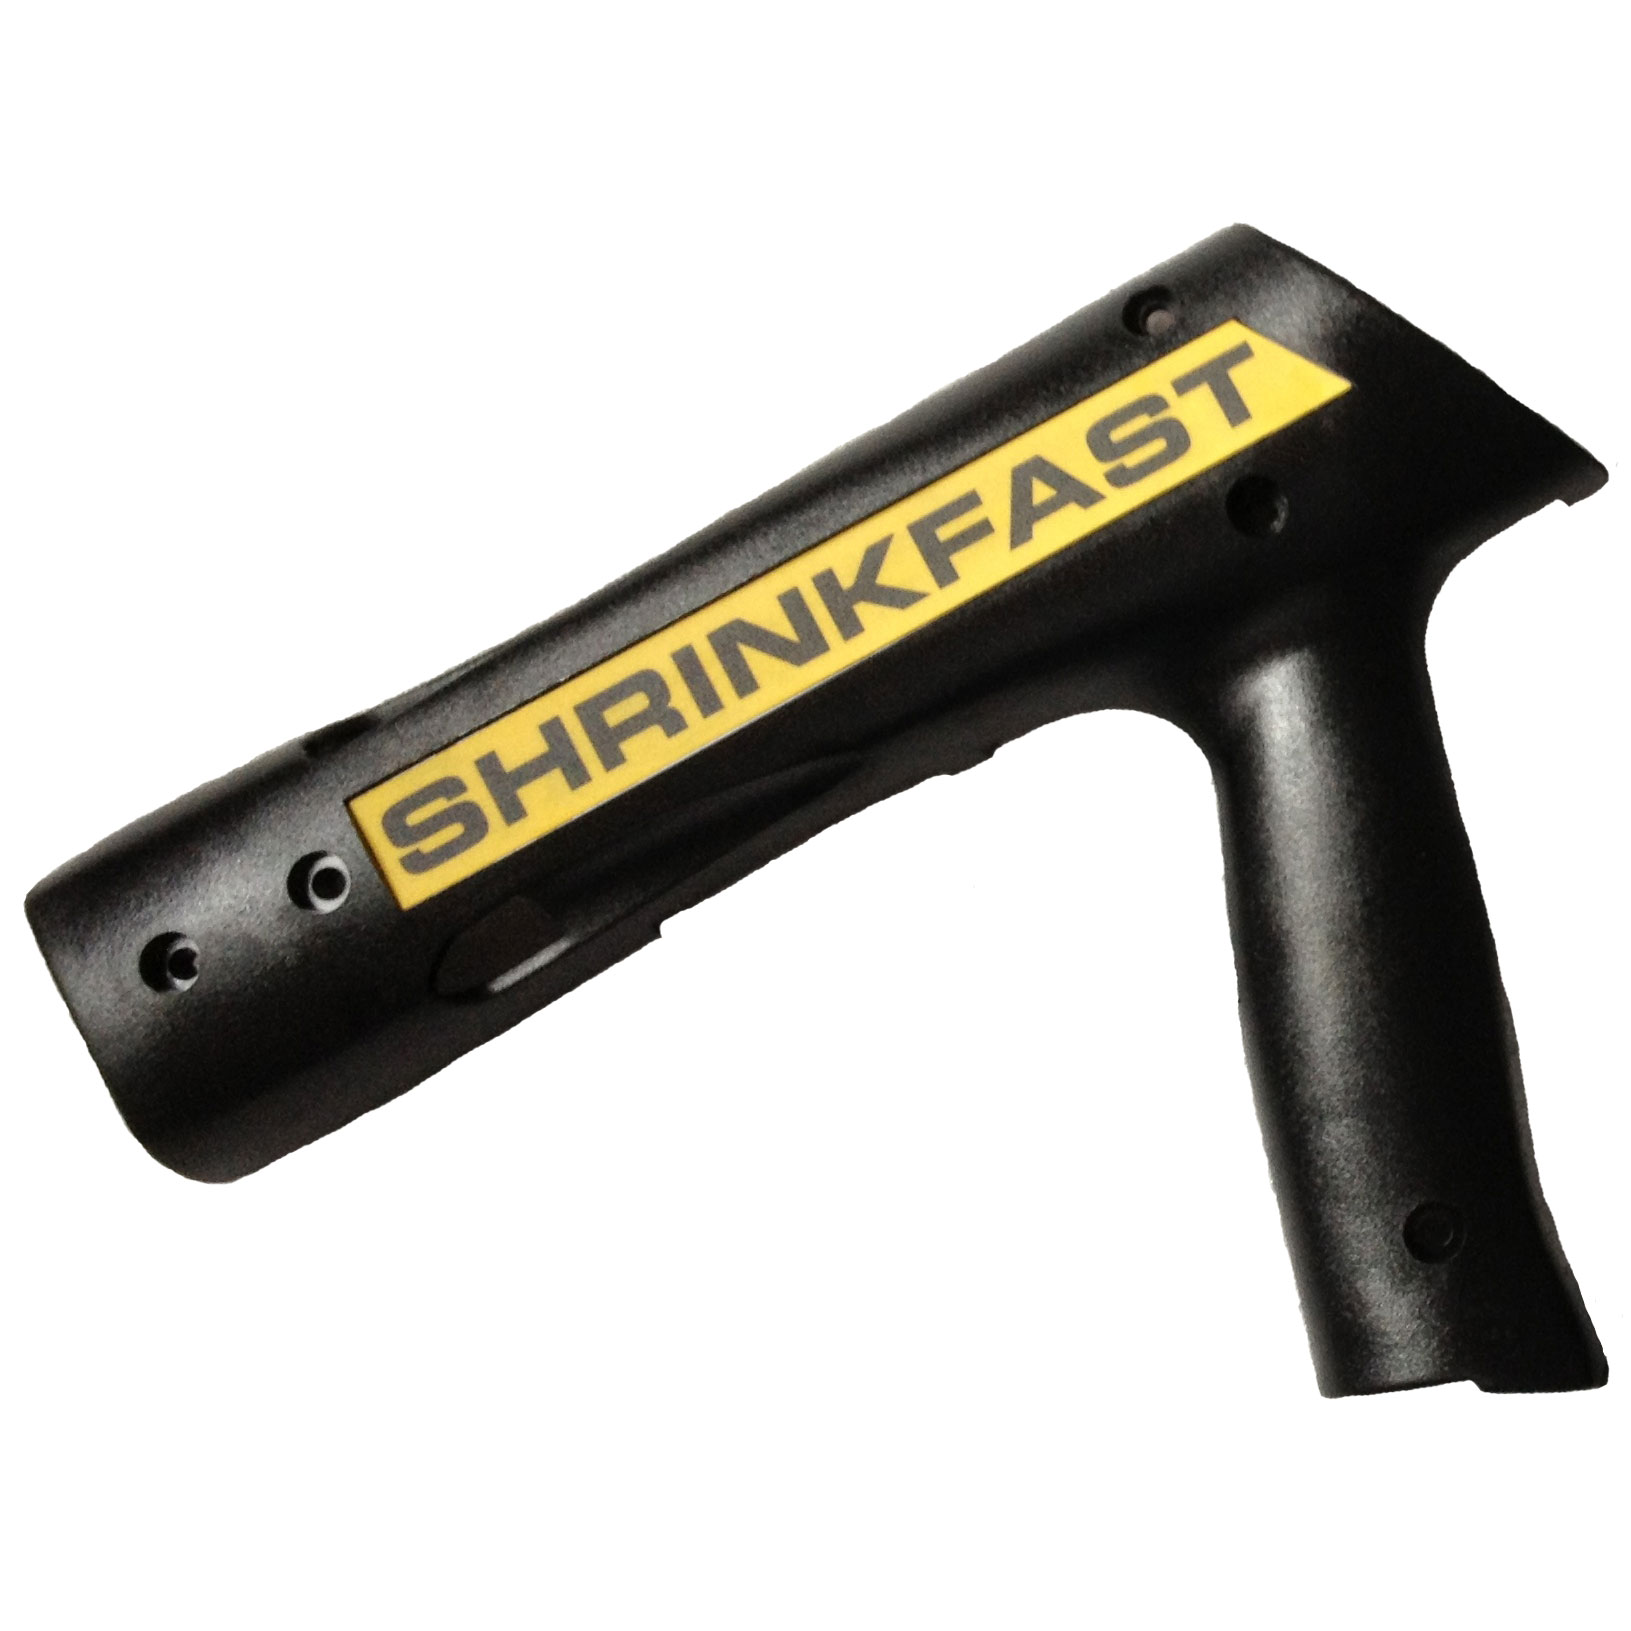 Heat Gun, Shrinkfast 998